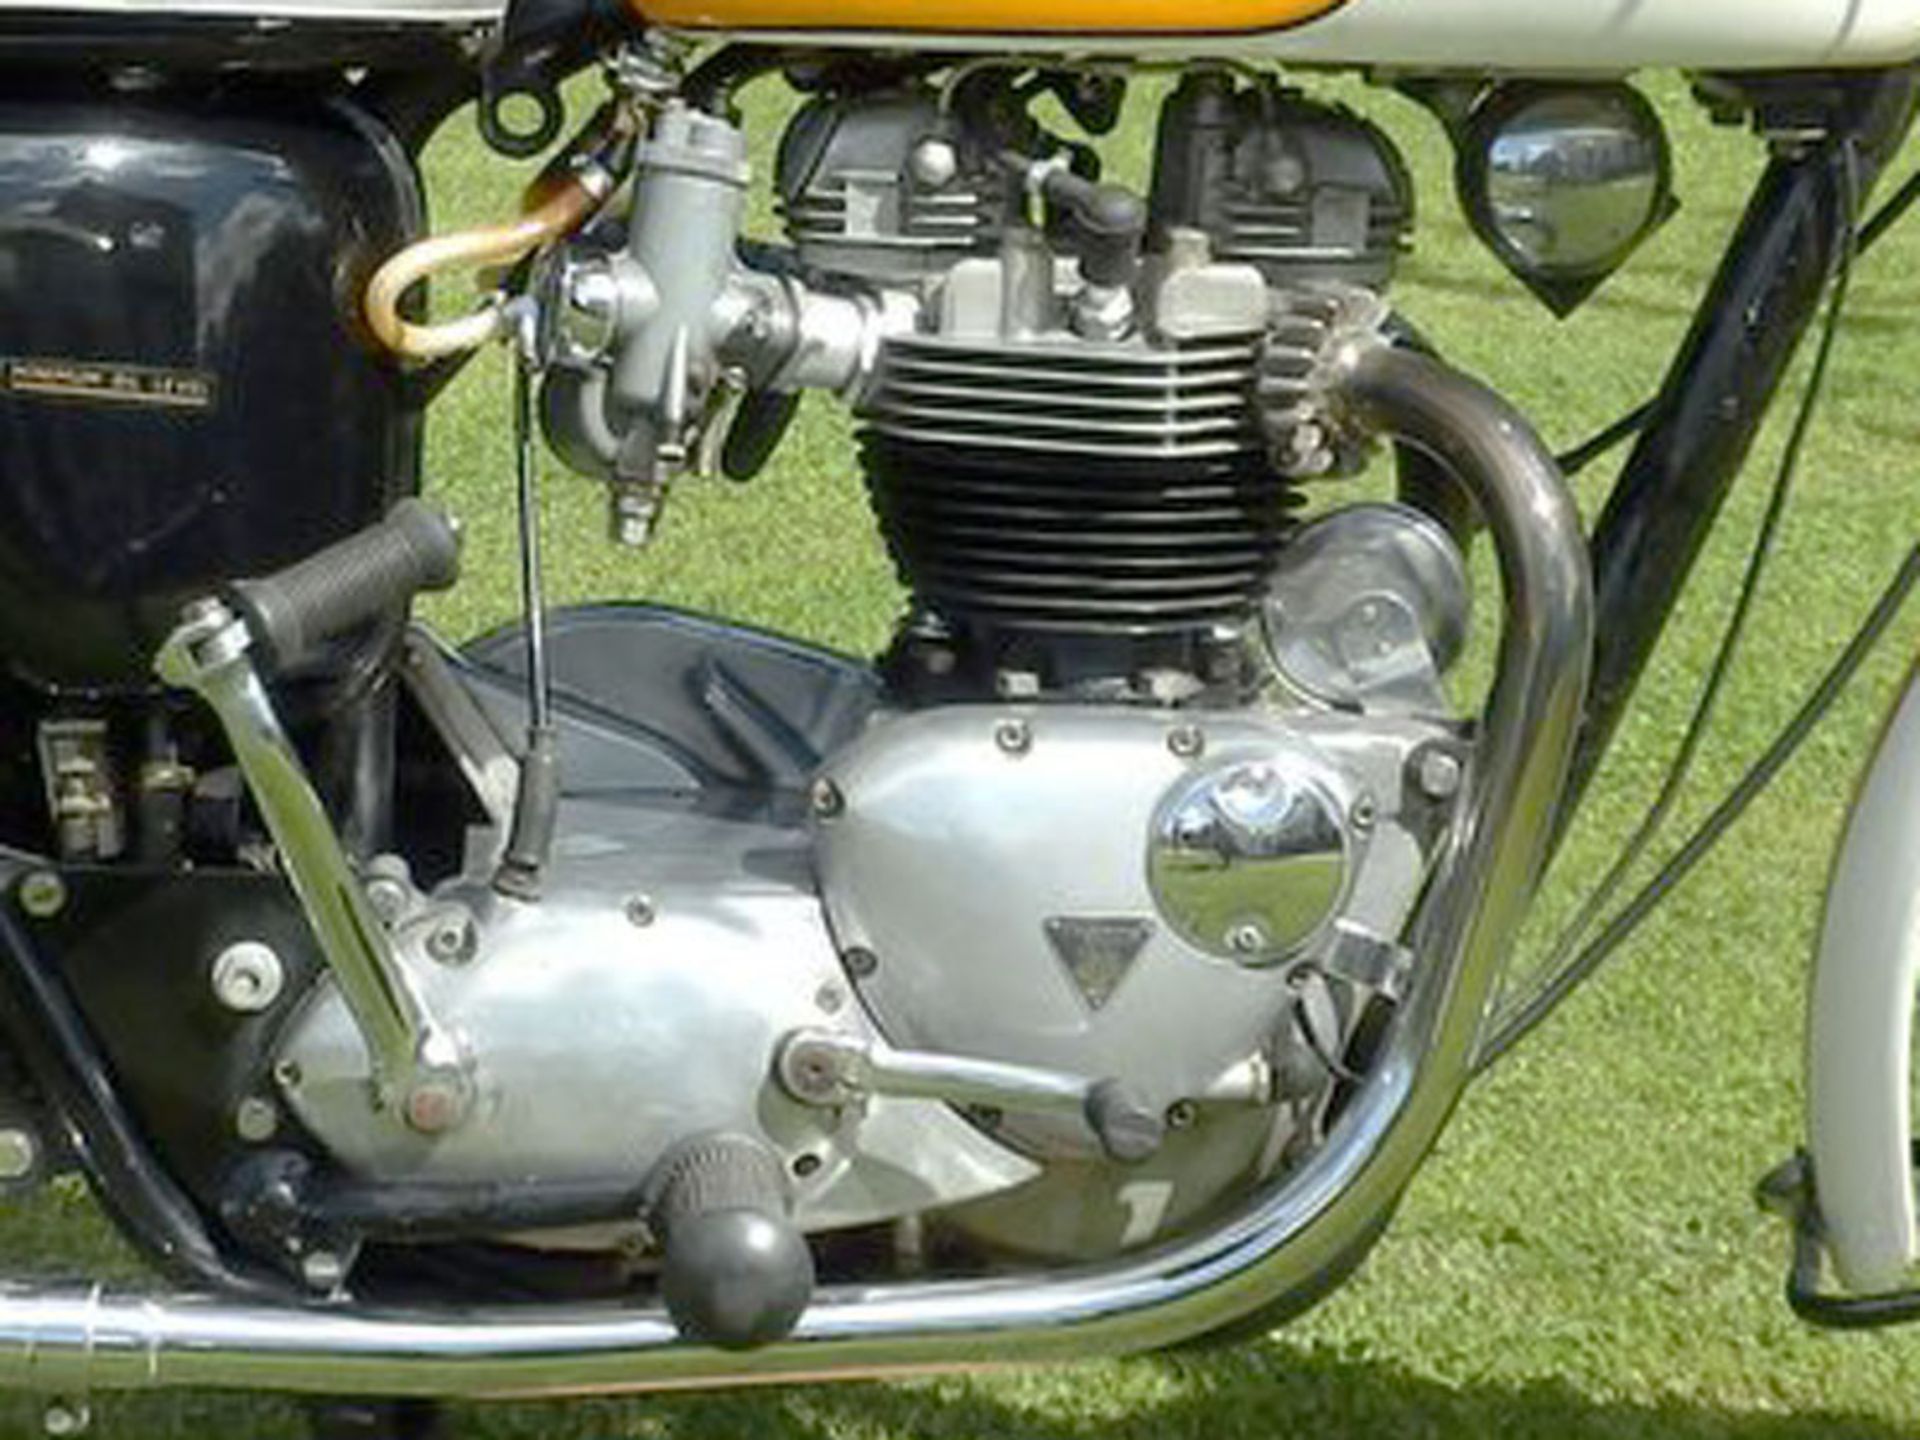 1964 Triumph T120 Bonneville - Image 3 of 4